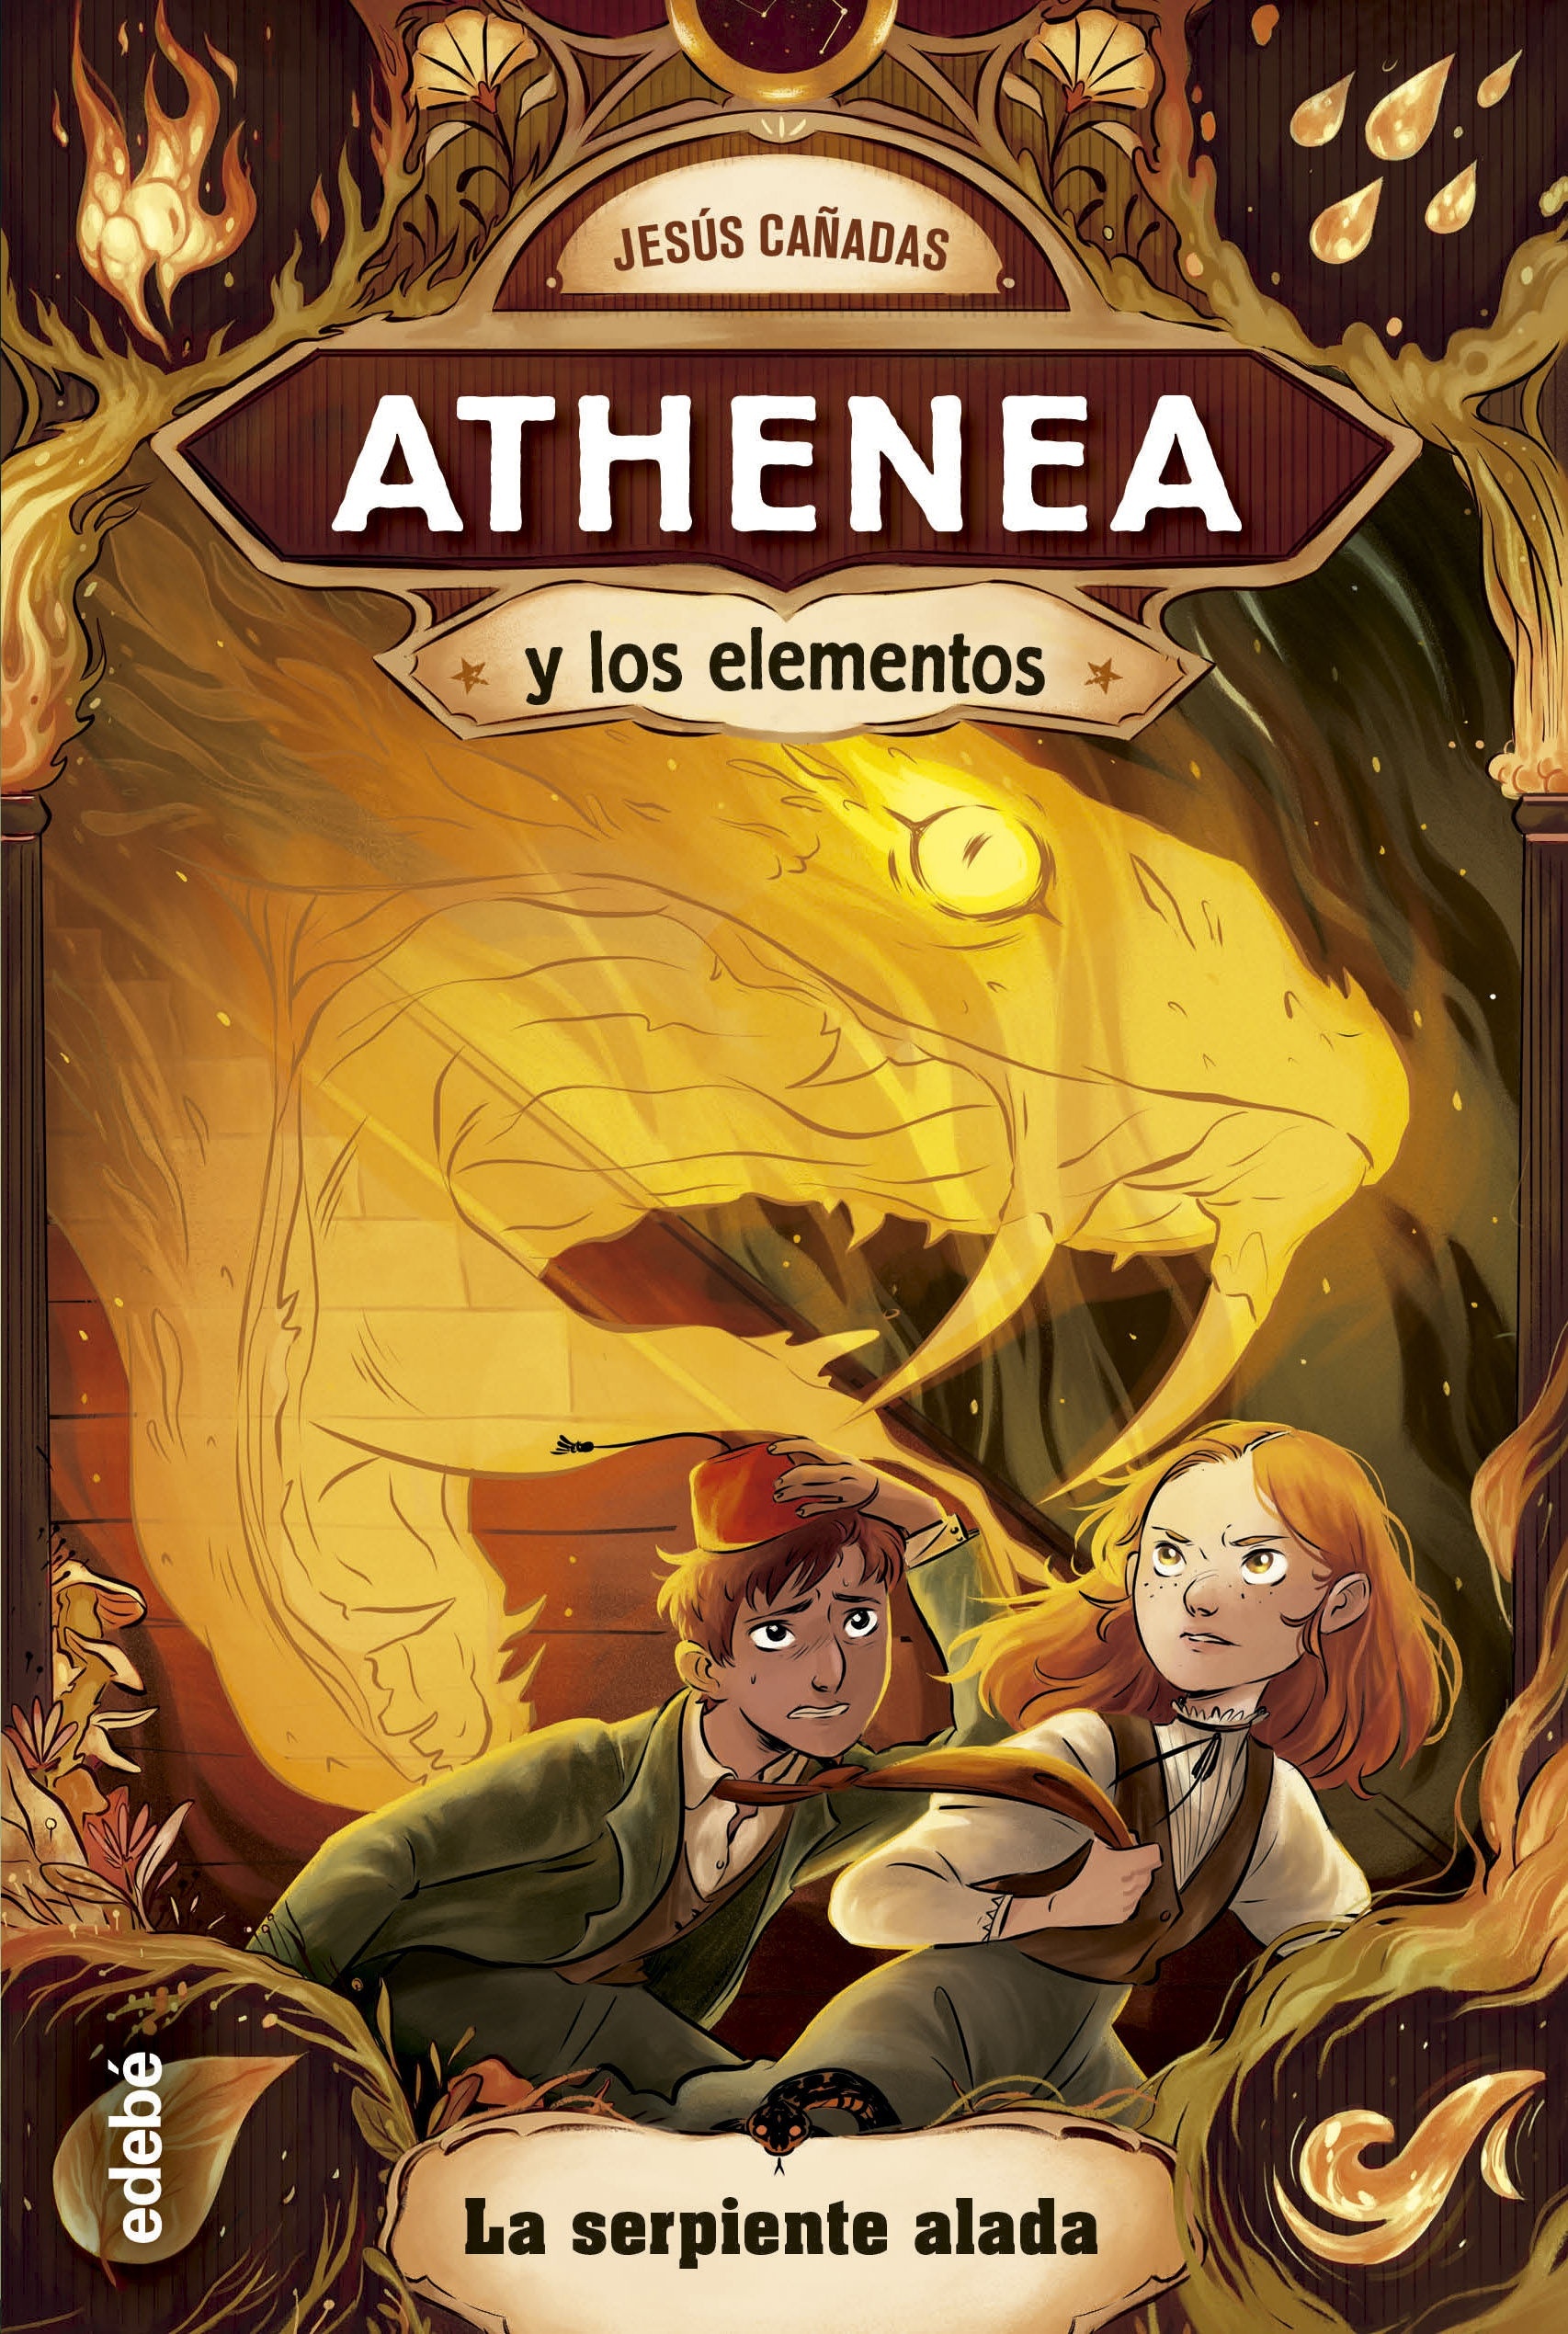 Serpiente alada, La "Athenea y los elementos 3". 